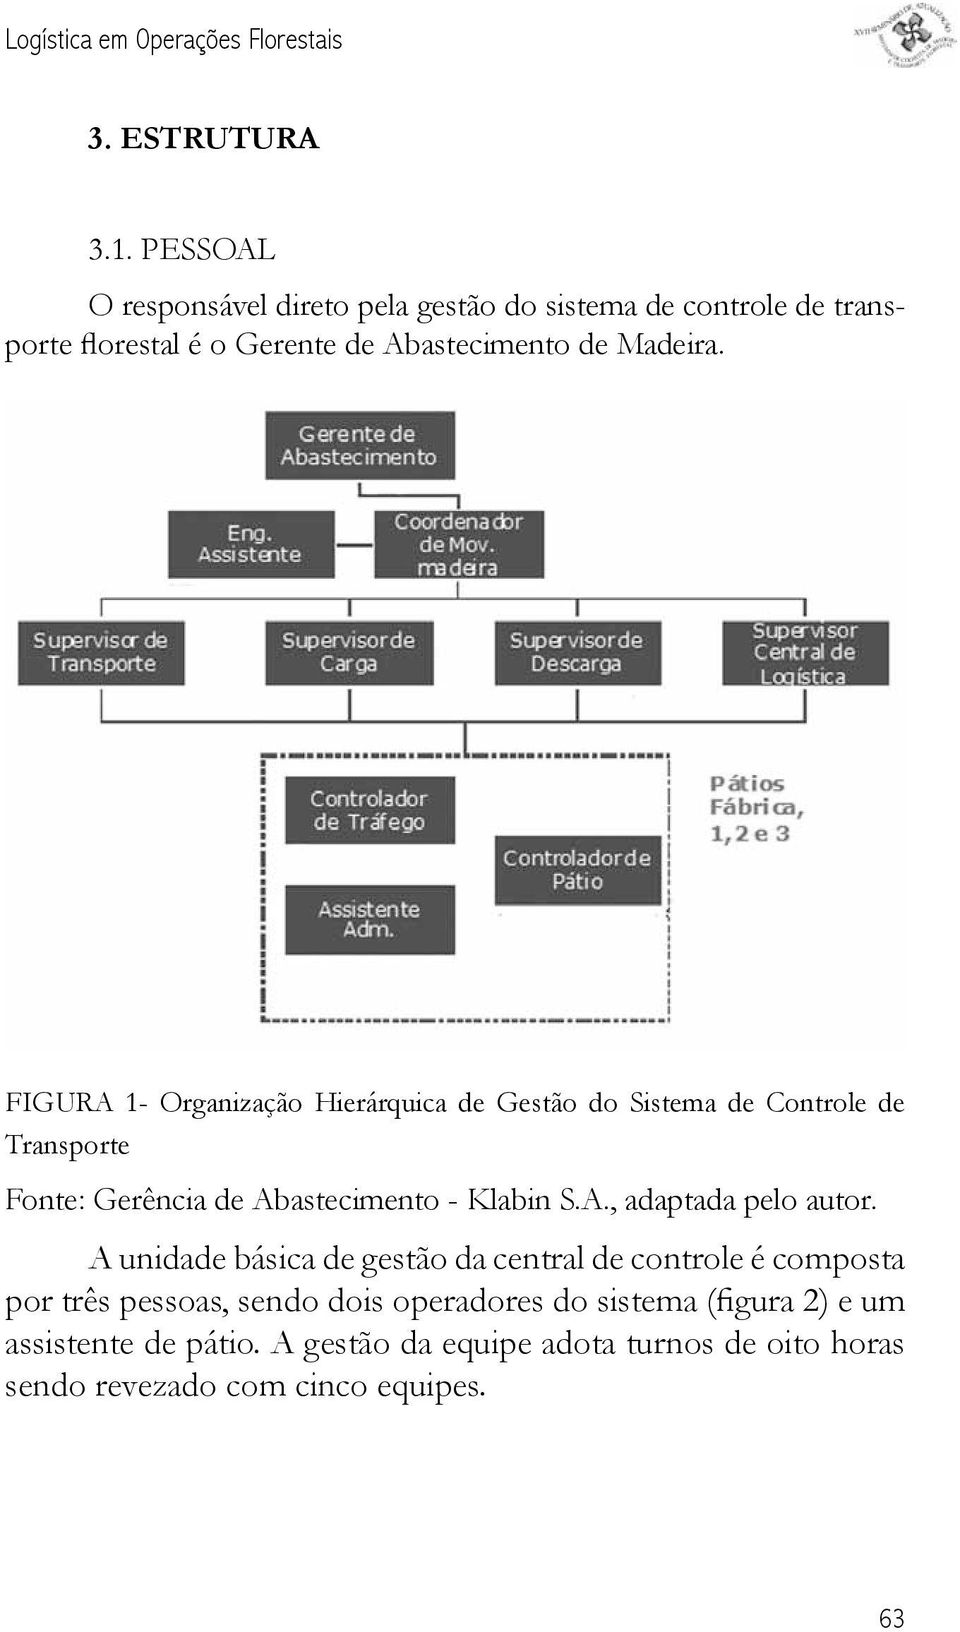 FIGURA 1- Organização Hierárquica de Gestão do Sistema de Controle de Transporte Fonte: Gerência de Abastecimento - Klabin S.A., adaptada pelo autor.